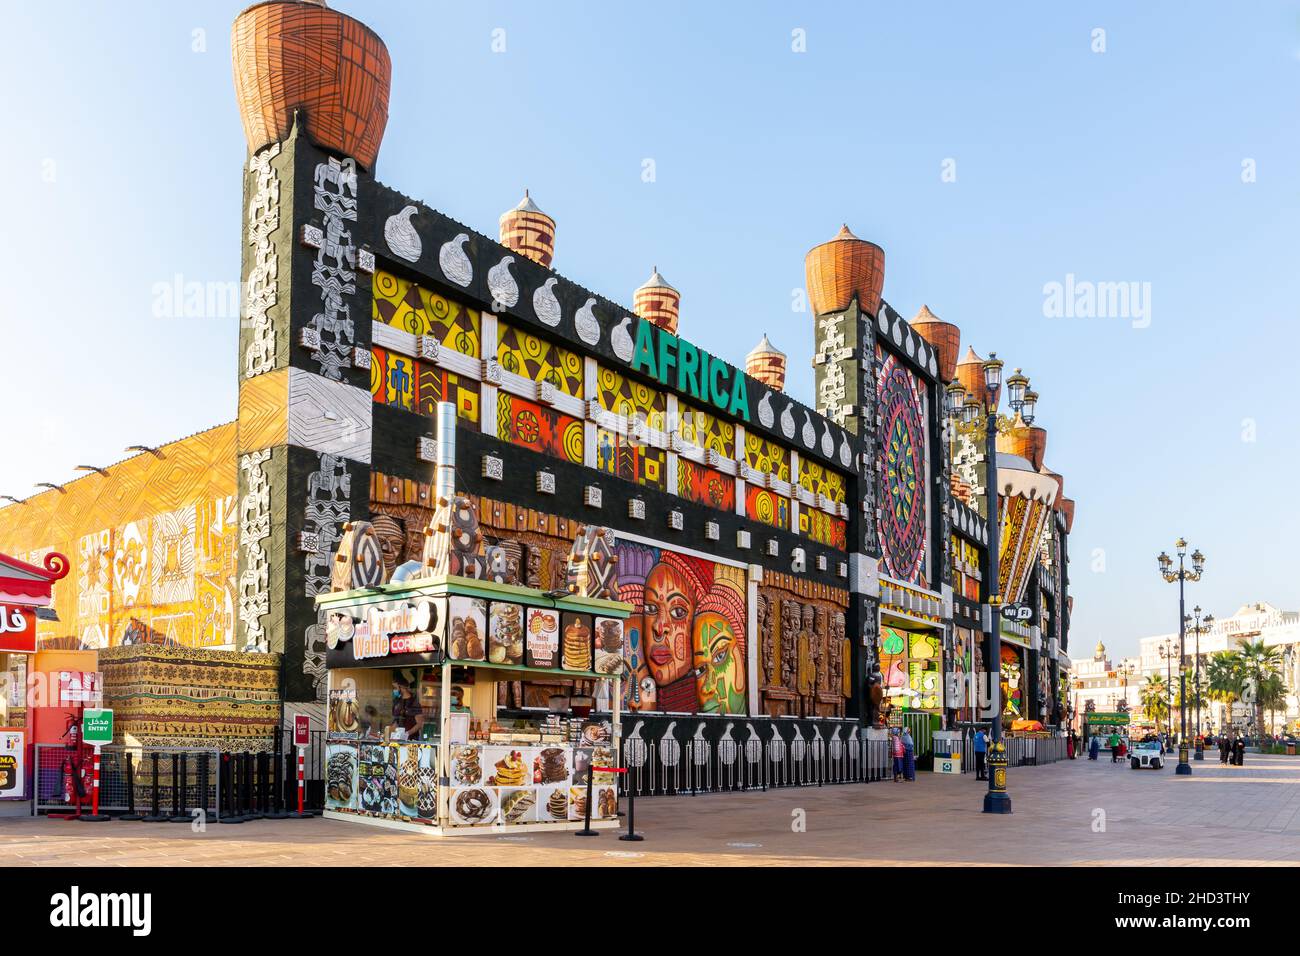 Dubaï, Émirats arabes Unis, 10.01.21.Pavillon africain coloré dans le parc d'attractions Global Village à Dubaï décoré de motifs géométriques africains. Banque D'Images